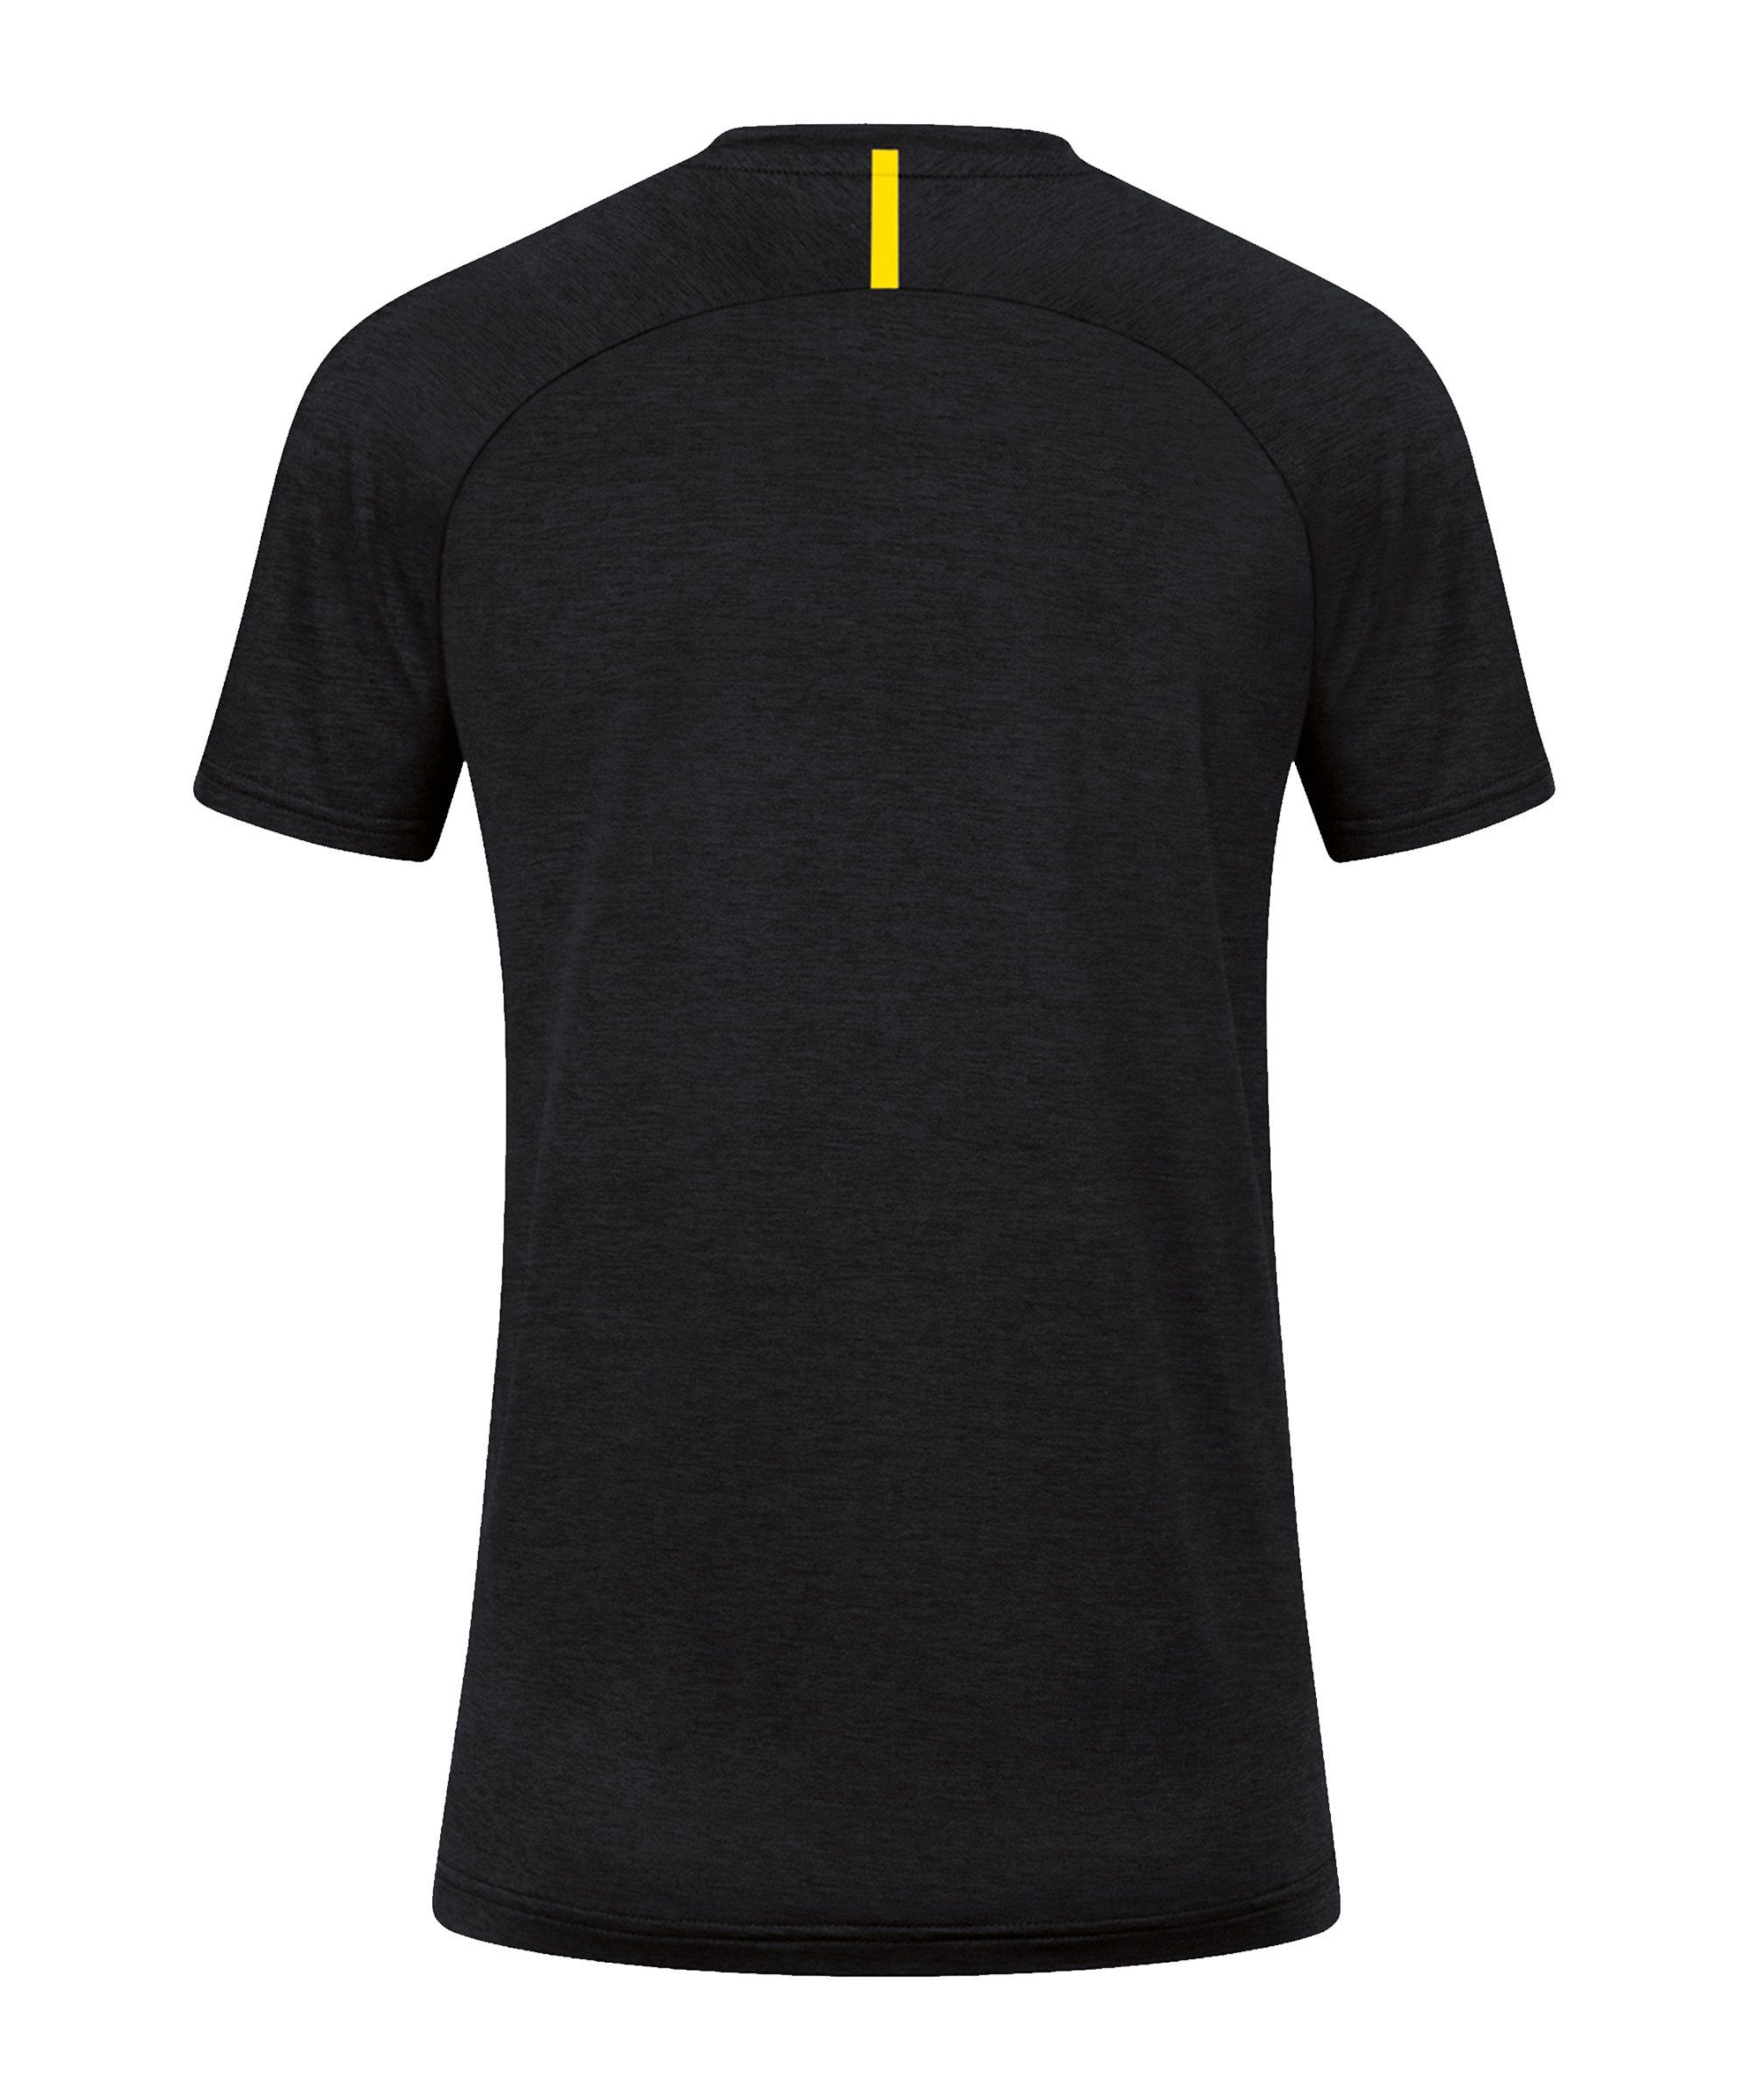 Jako Damen default Freizeit T-Shirt Challenge T-Shirt schwarzgelb